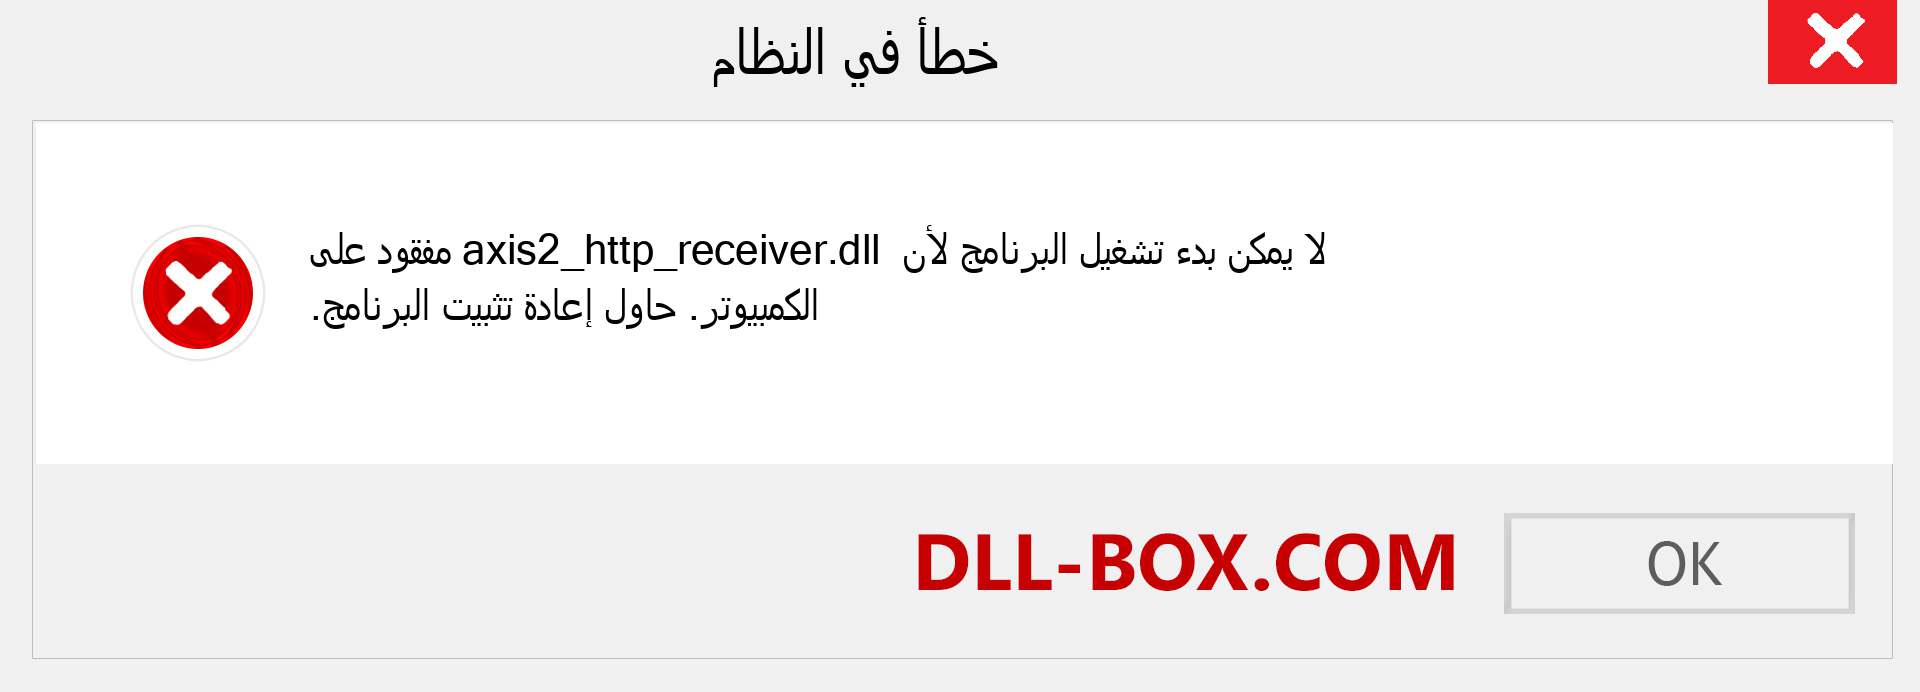 ملف axis2_http_receiver.dll مفقود ؟. التنزيل لنظام التشغيل Windows 7 و 8 و 10 - إصلاح خطأ axis2_http_receiver dll المفقود على Windows والصور والصور